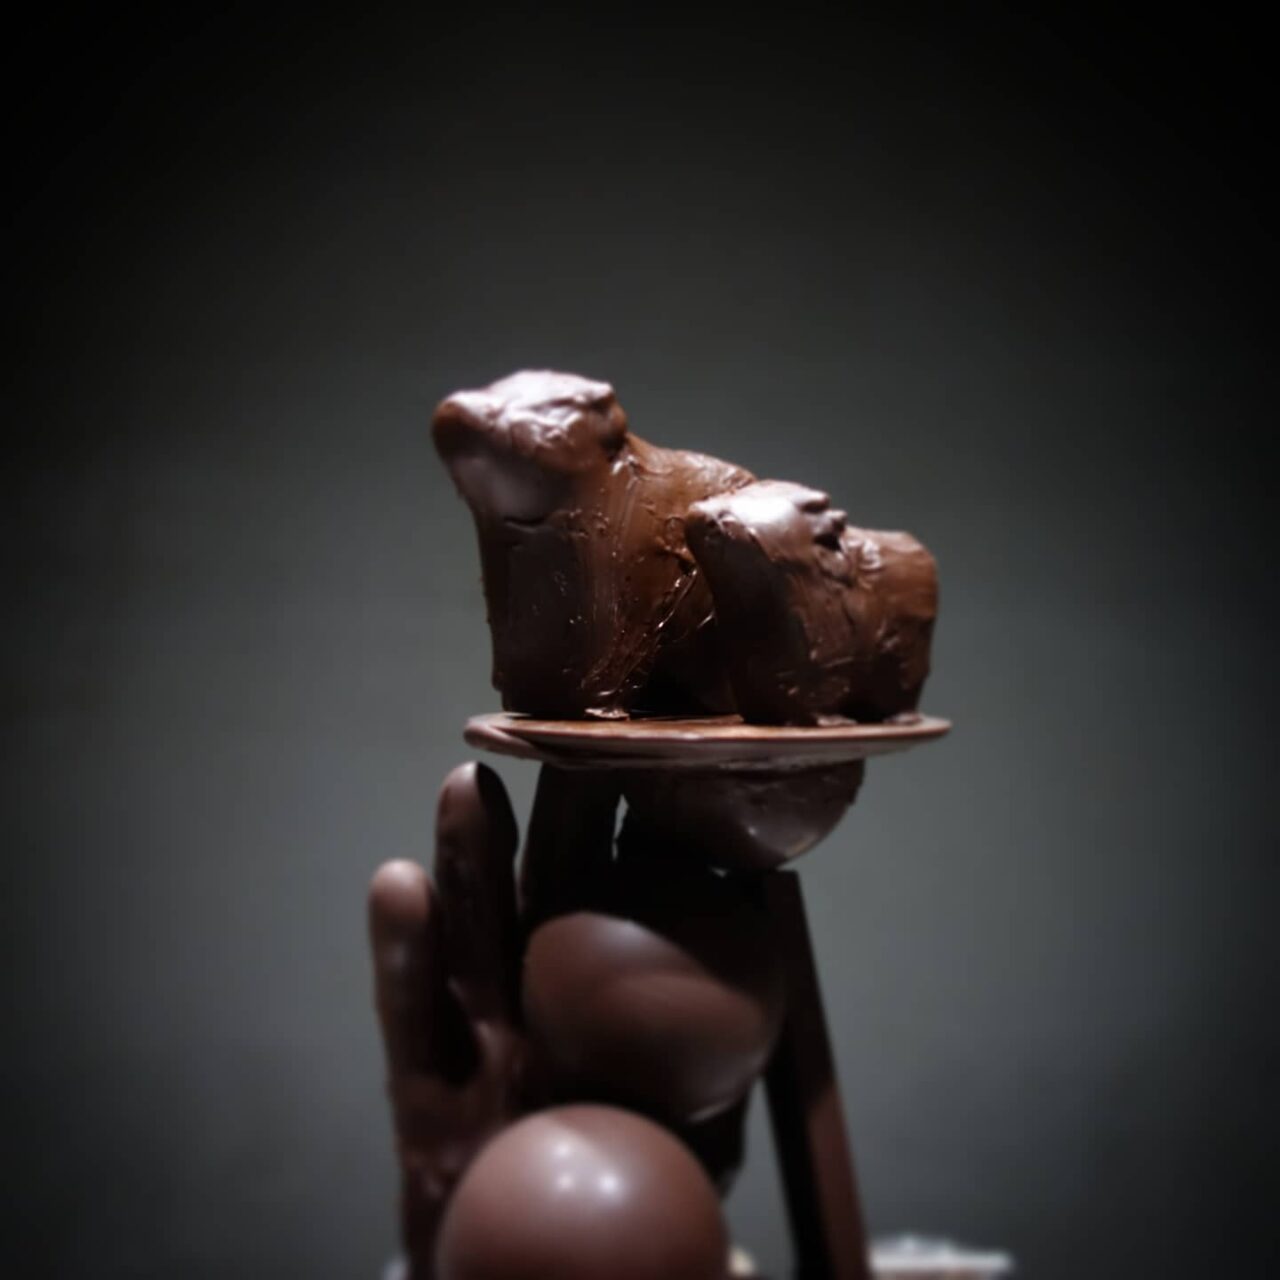 chocolatier KAITO（ショコラティエカイト）